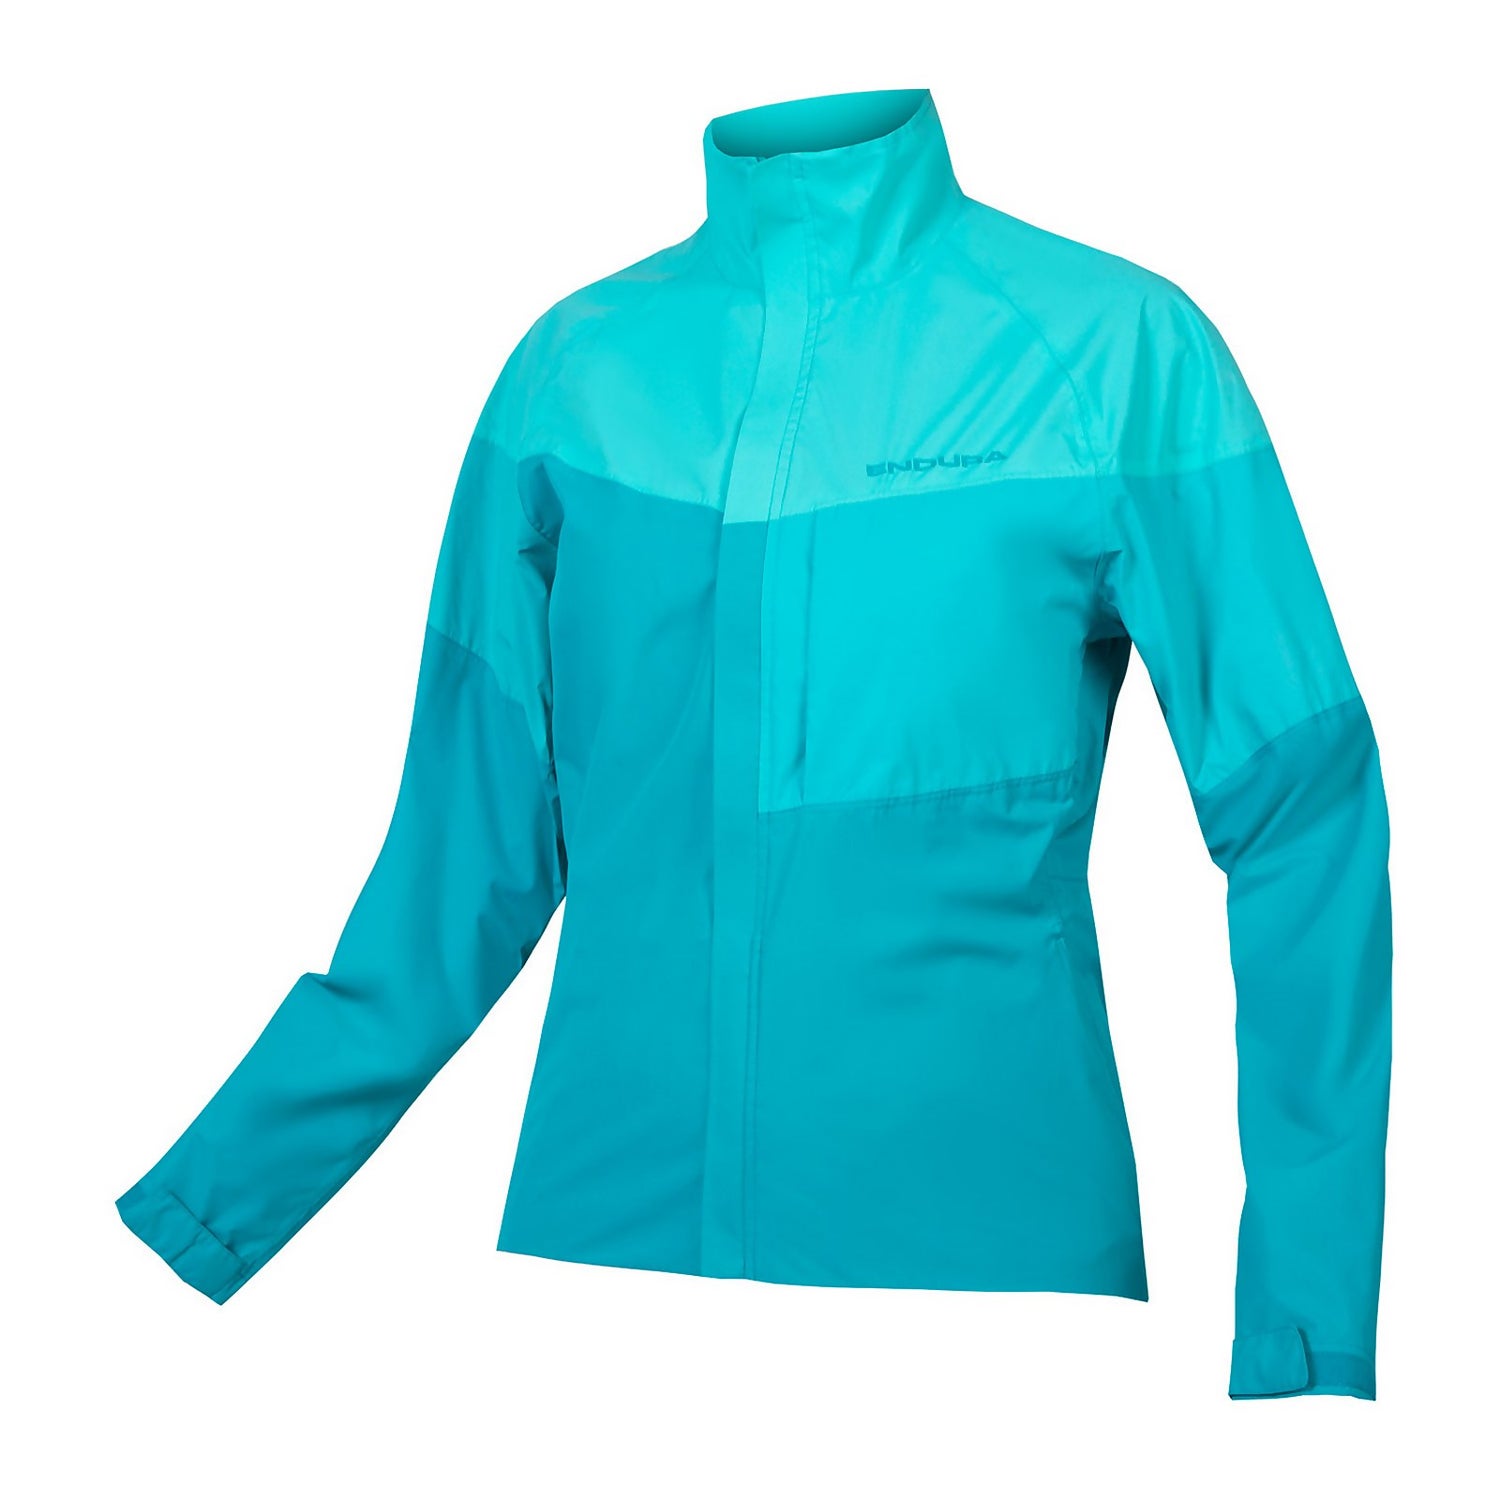 Women's Urban Luminite Jacket II - Pacific Blue - L